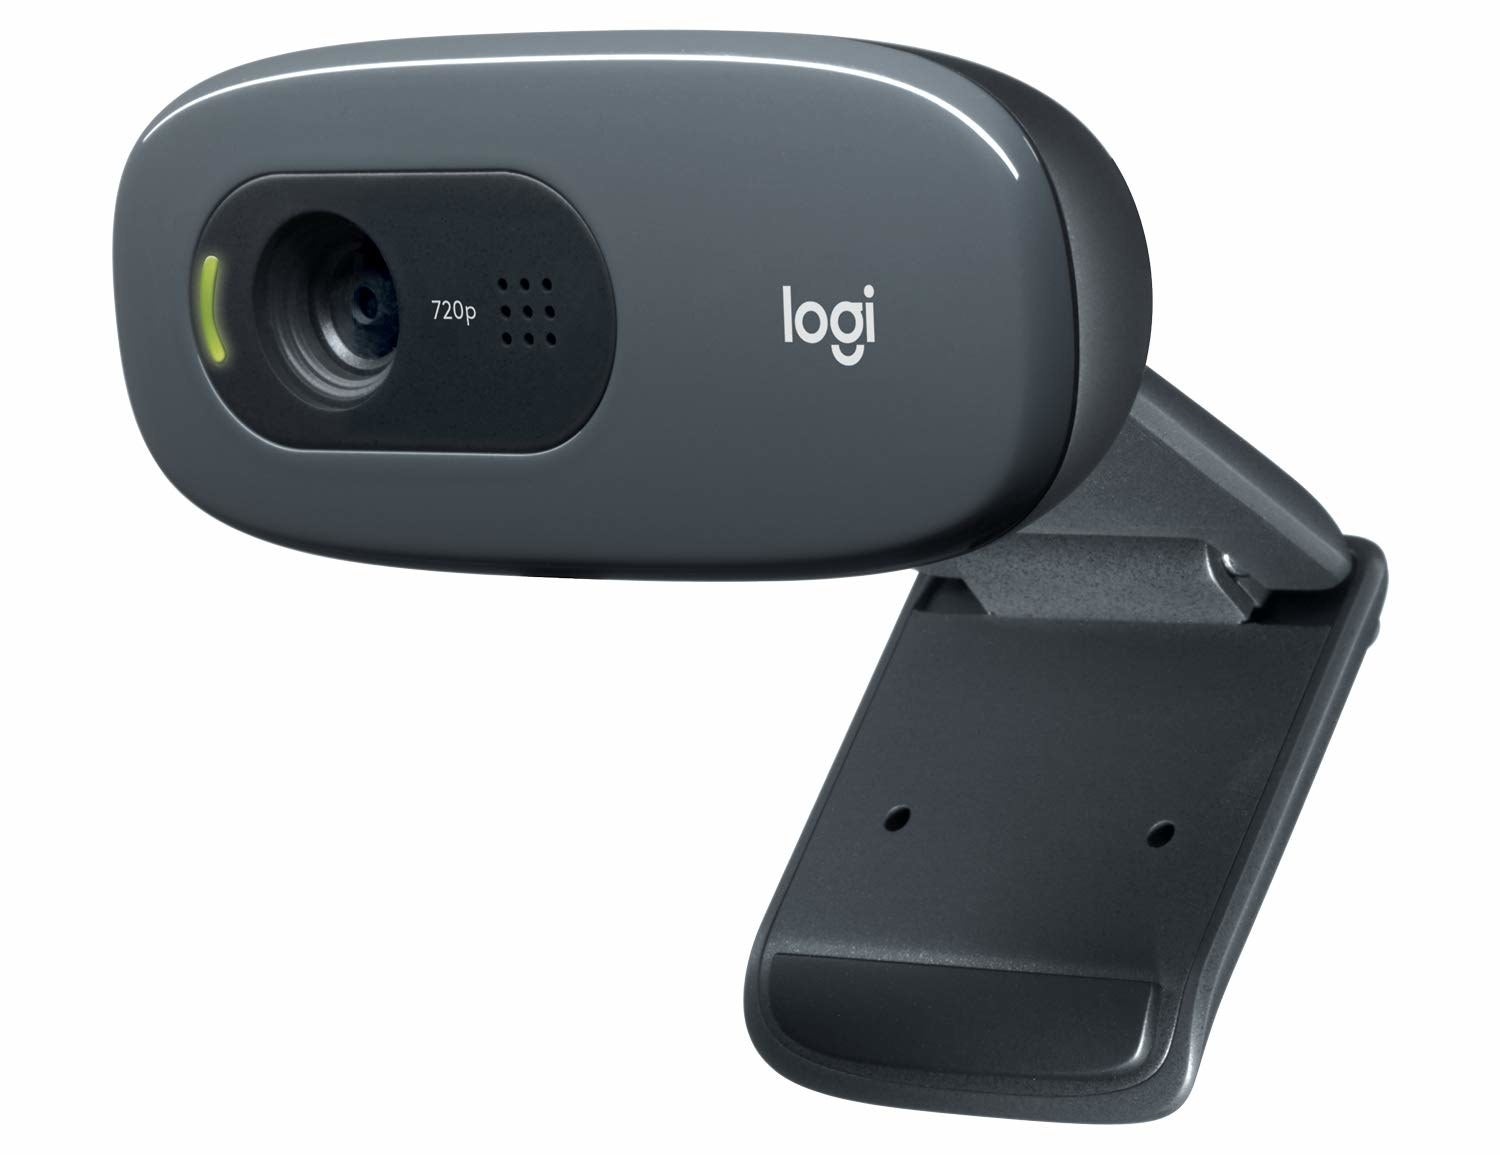 A Logitech C270 HD Webcam in black.